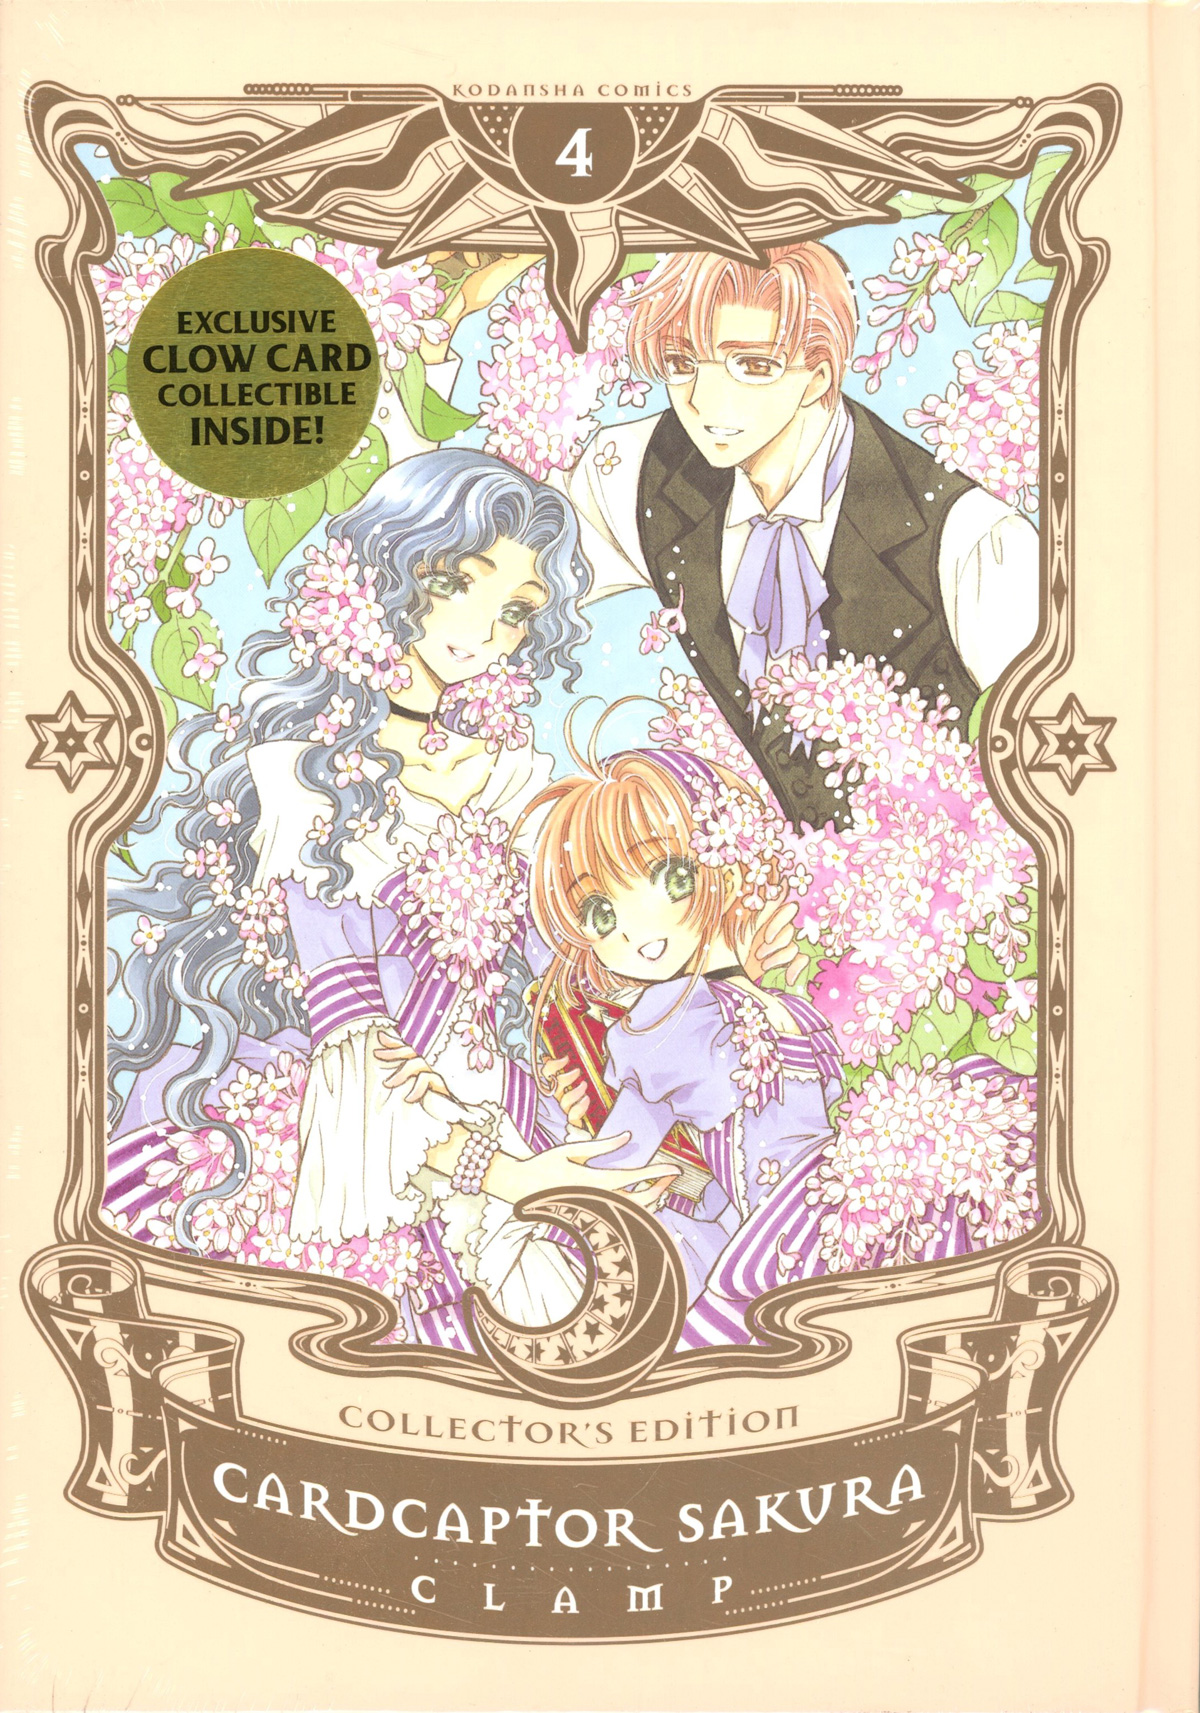 Cardcaptor Sakura Collectors Edition Vol 4 HC